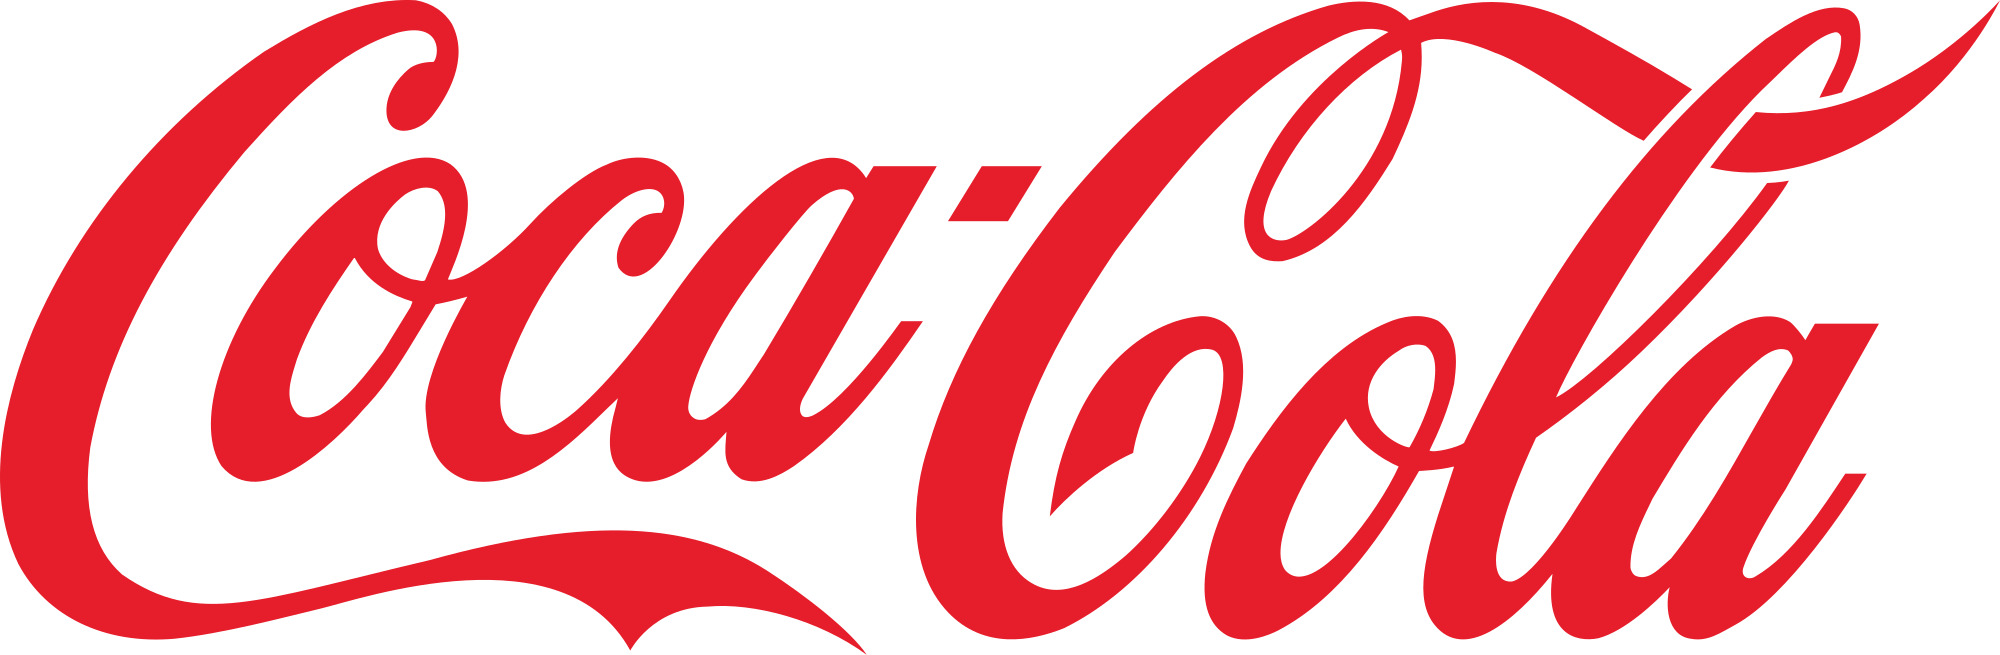 Coca Cola Logo Text icons